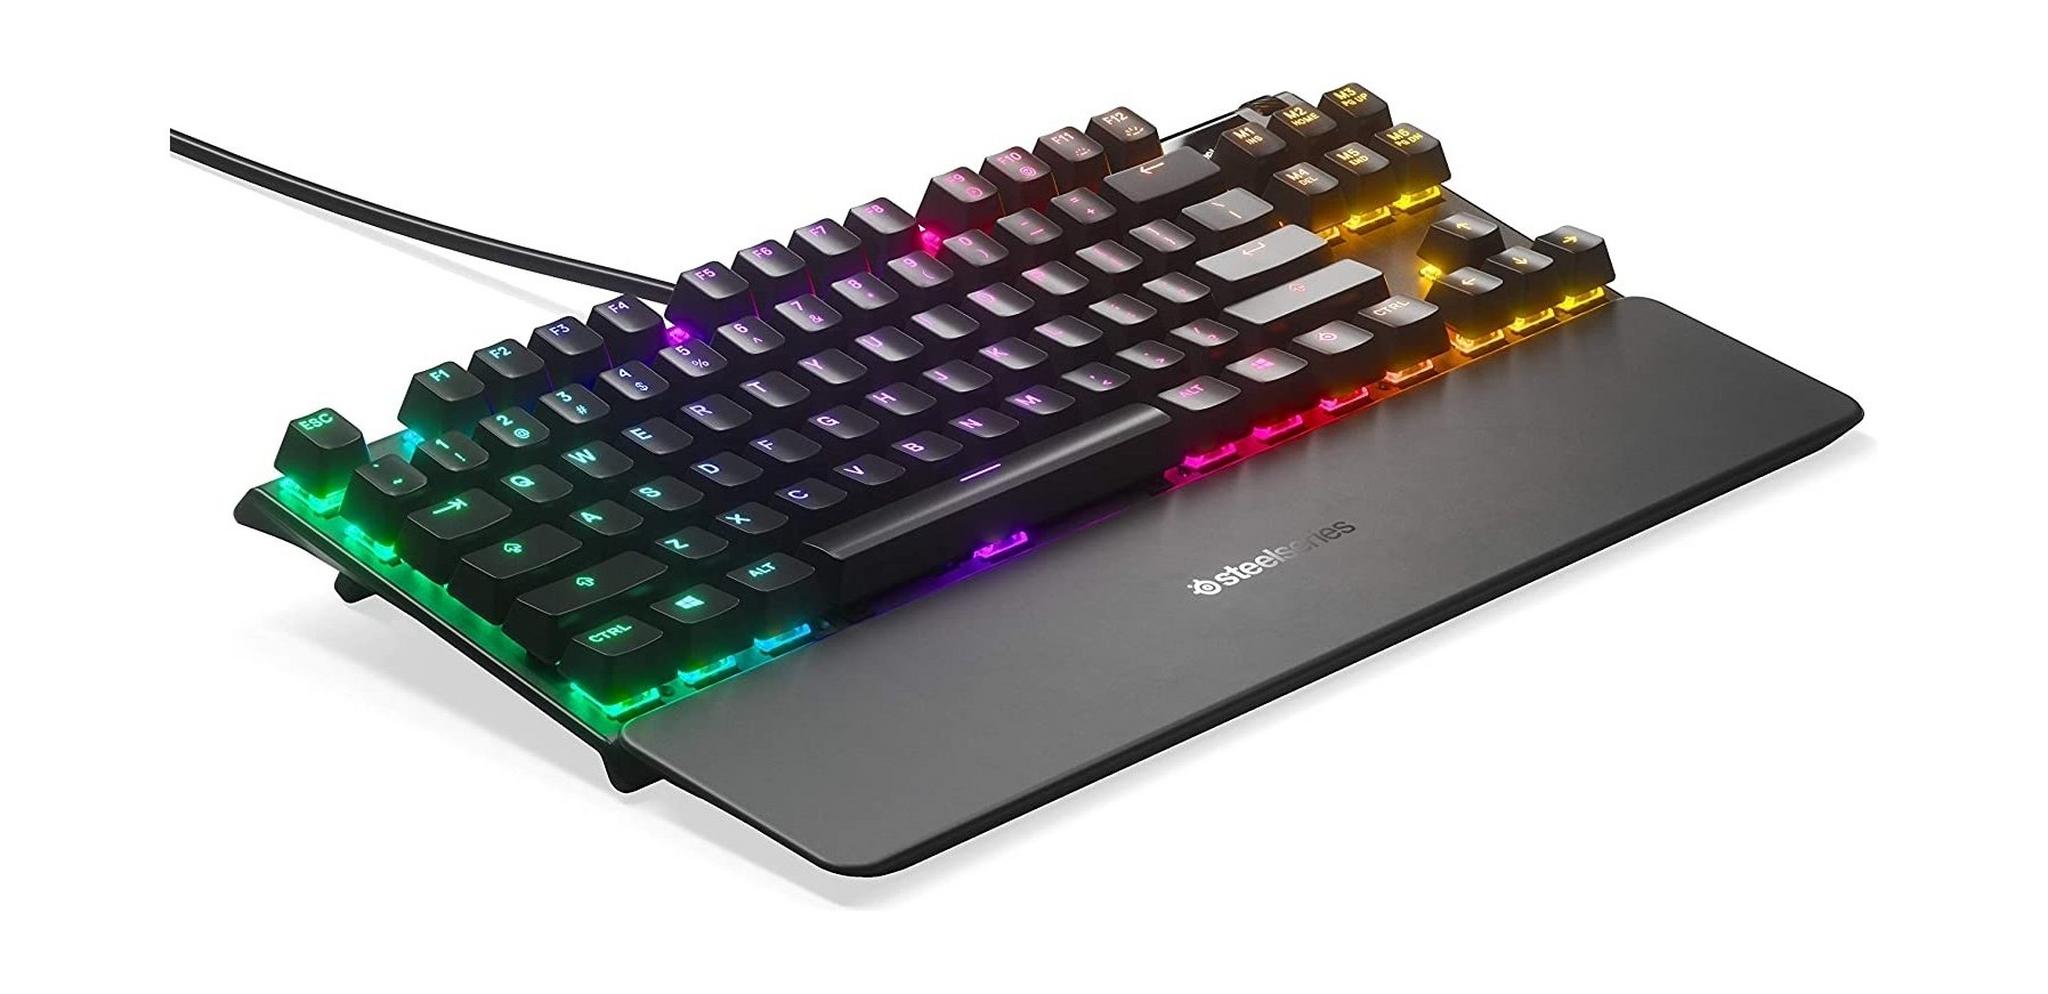 SteelSeries Apex Pro TKL Mechanical Gaming Keyboard